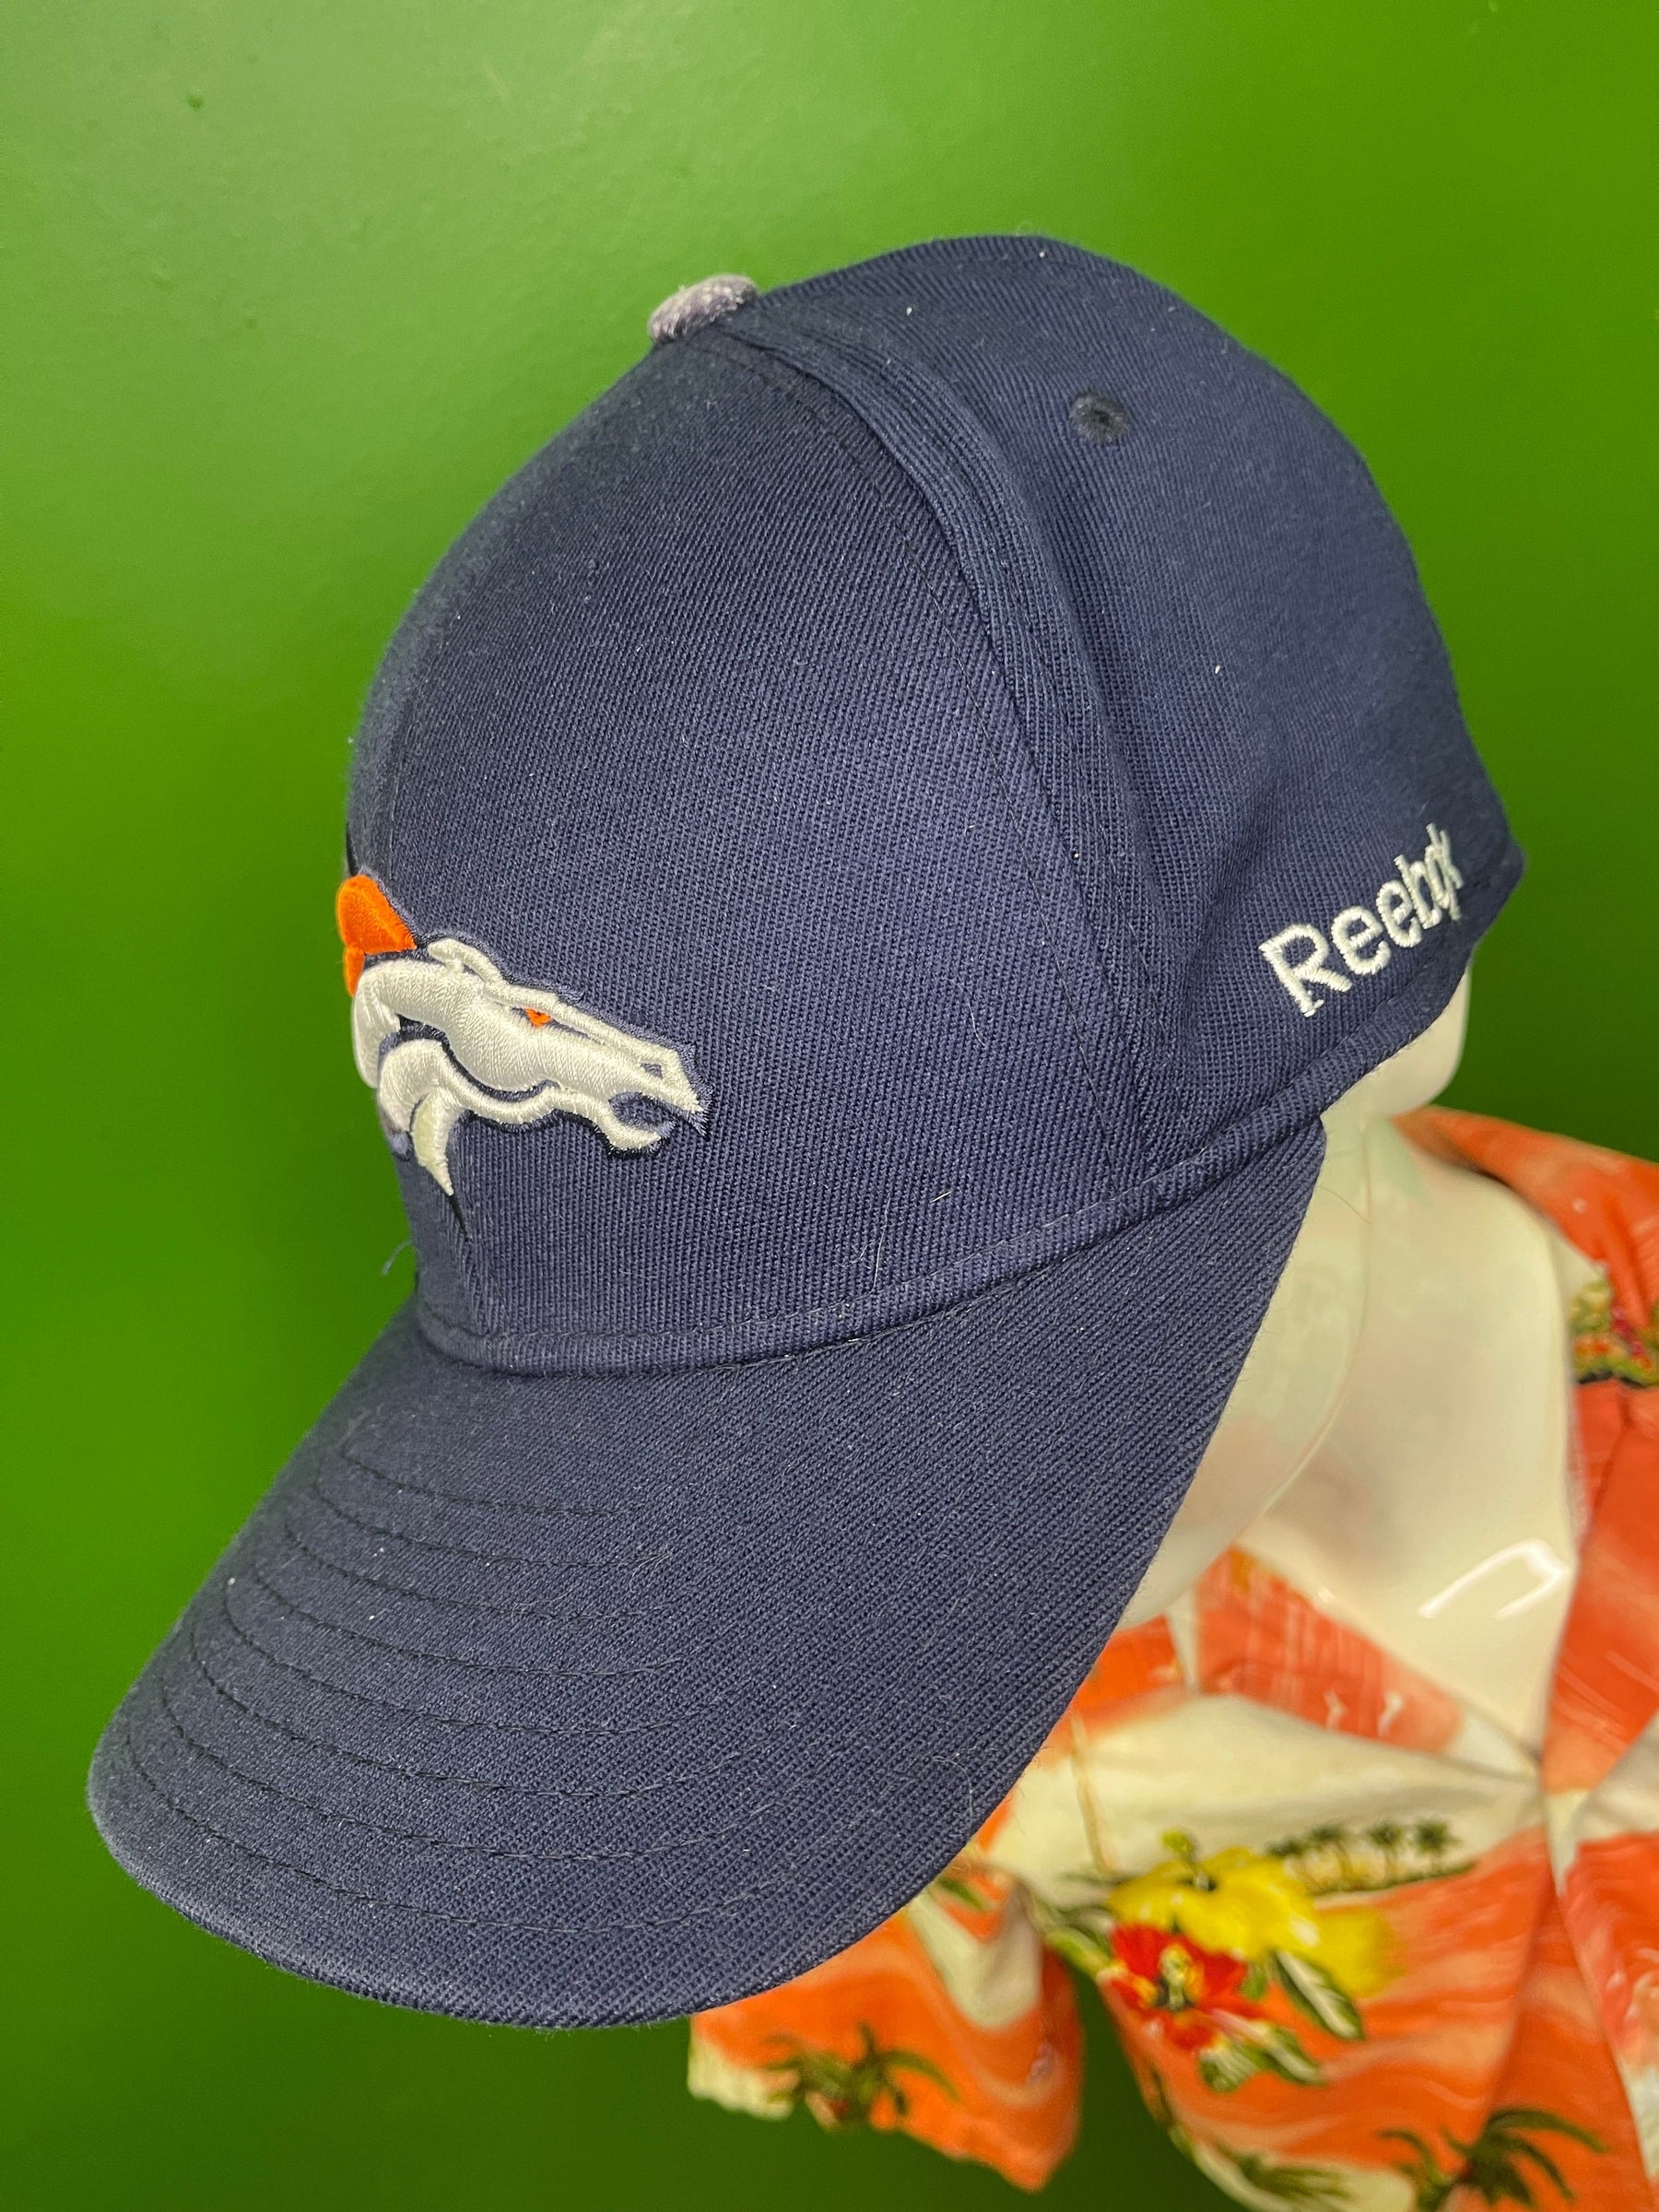 NFL Denver Broncos Reebok Vintage Wool Blend Hat/Cap Large/X-Large